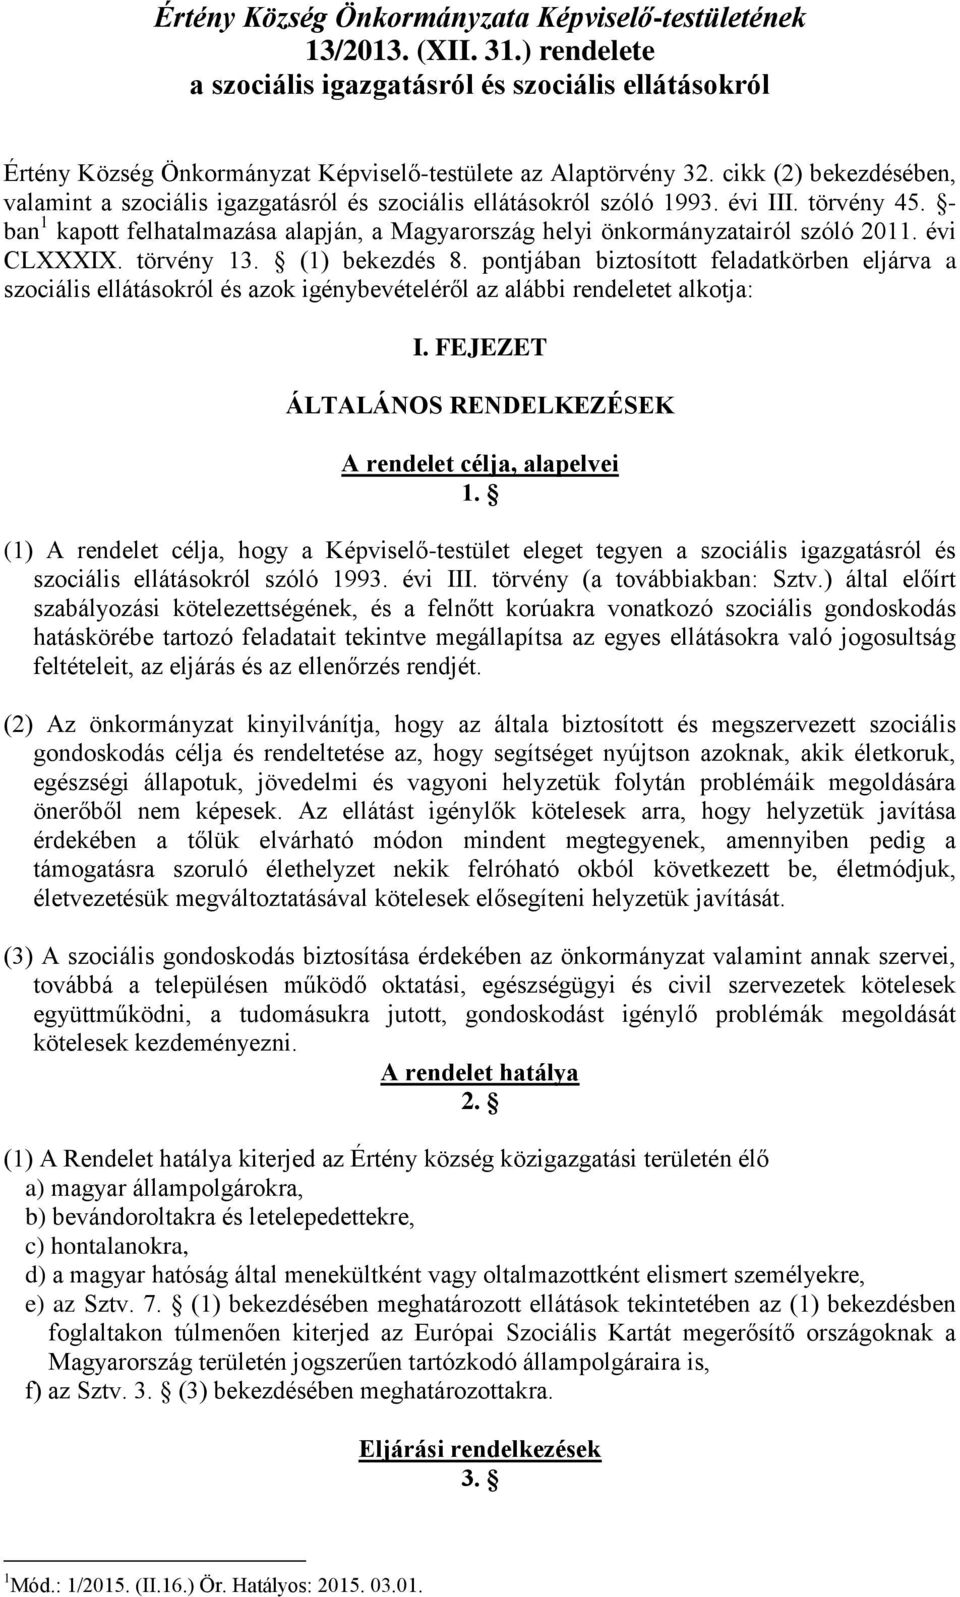 - ban 1 kapott felhatalmazása alapján, a Magyarország helyi önkormányzatairól szóló 2011. évi CLXXXIX. törvény 13. (1) bekezdés 8.